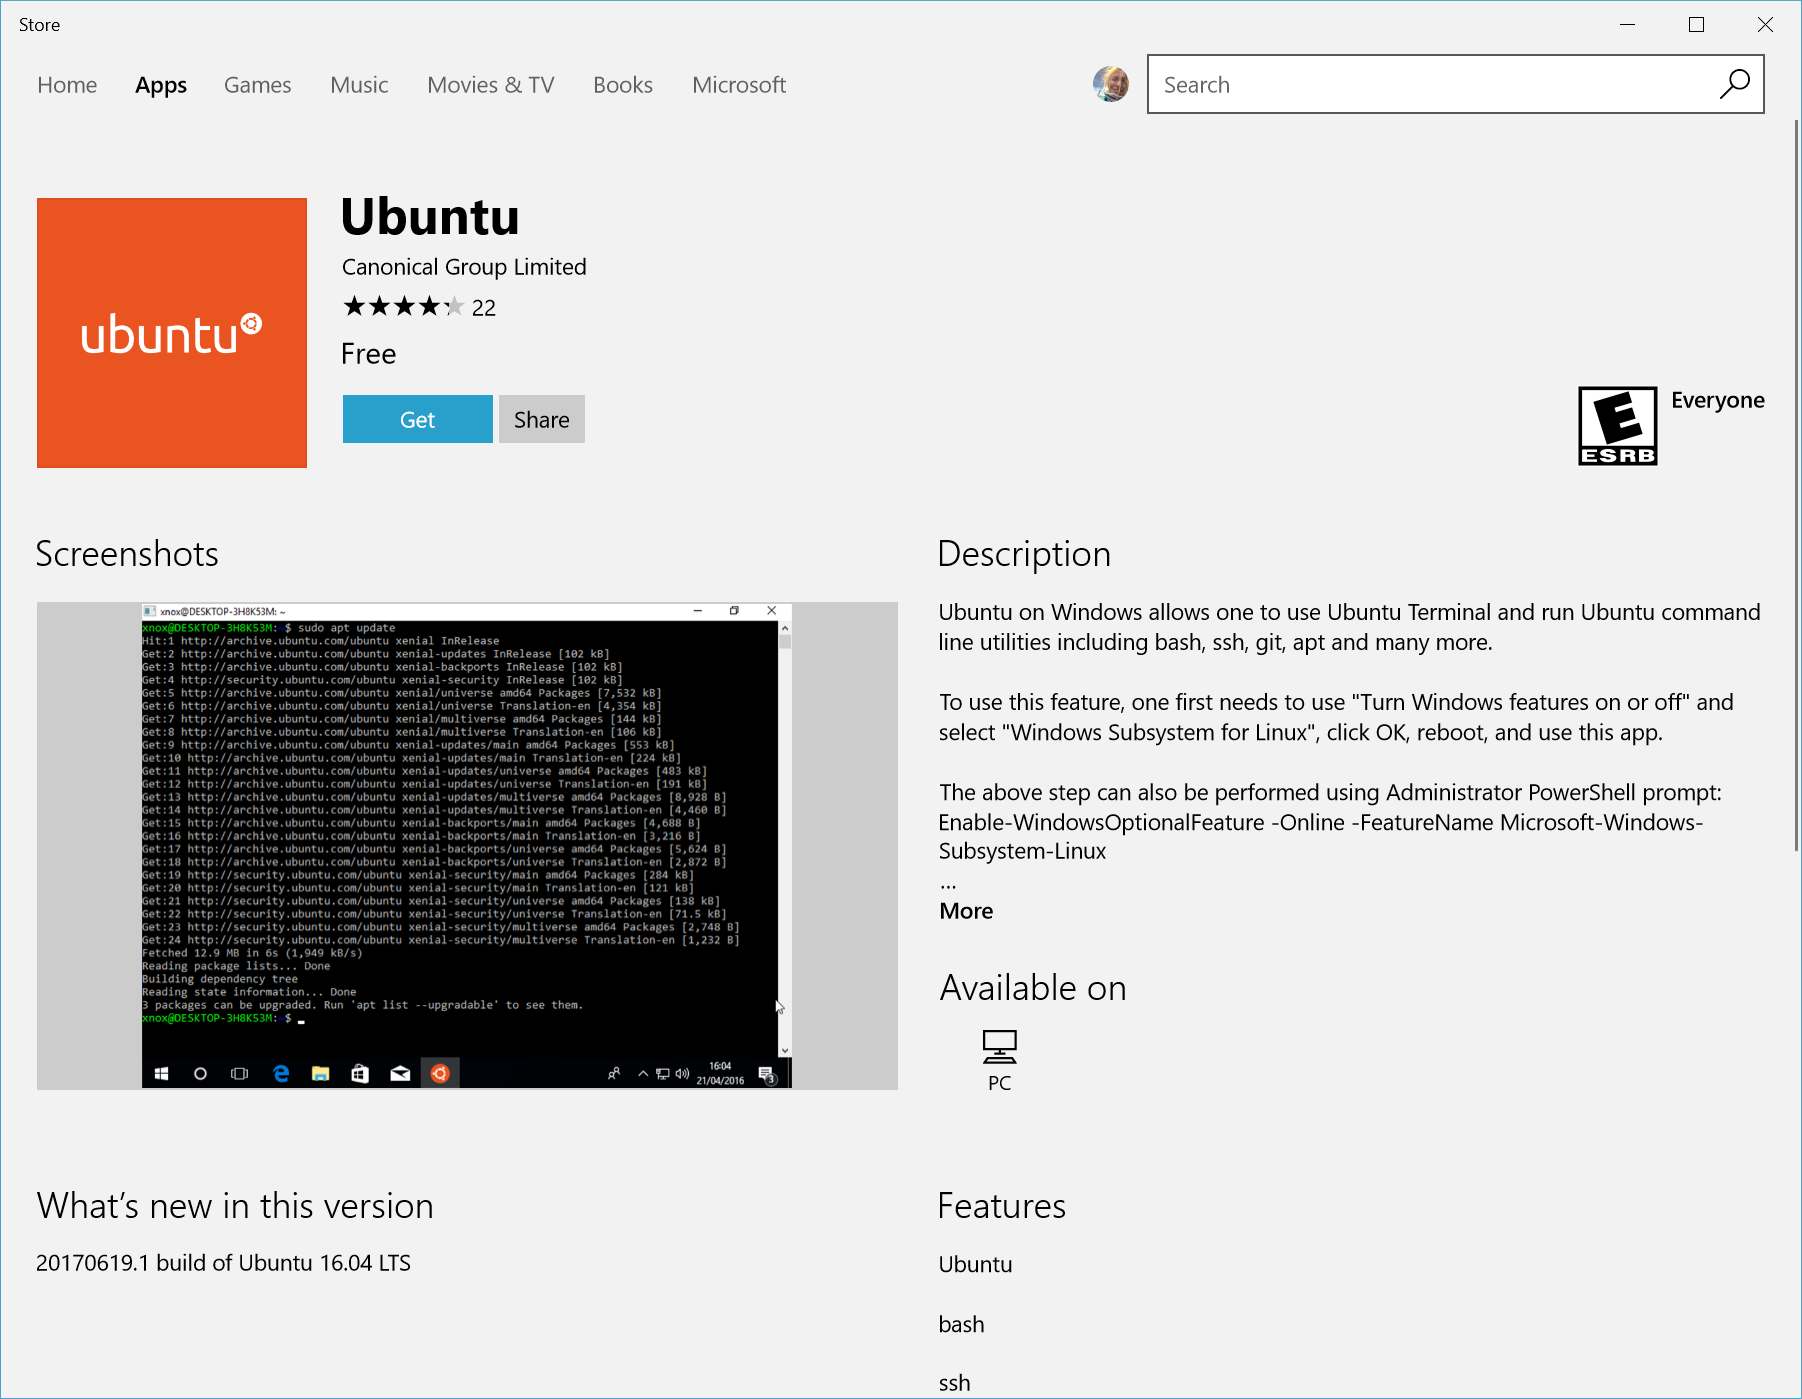 Screenshot showing the "Ubuntu" store page